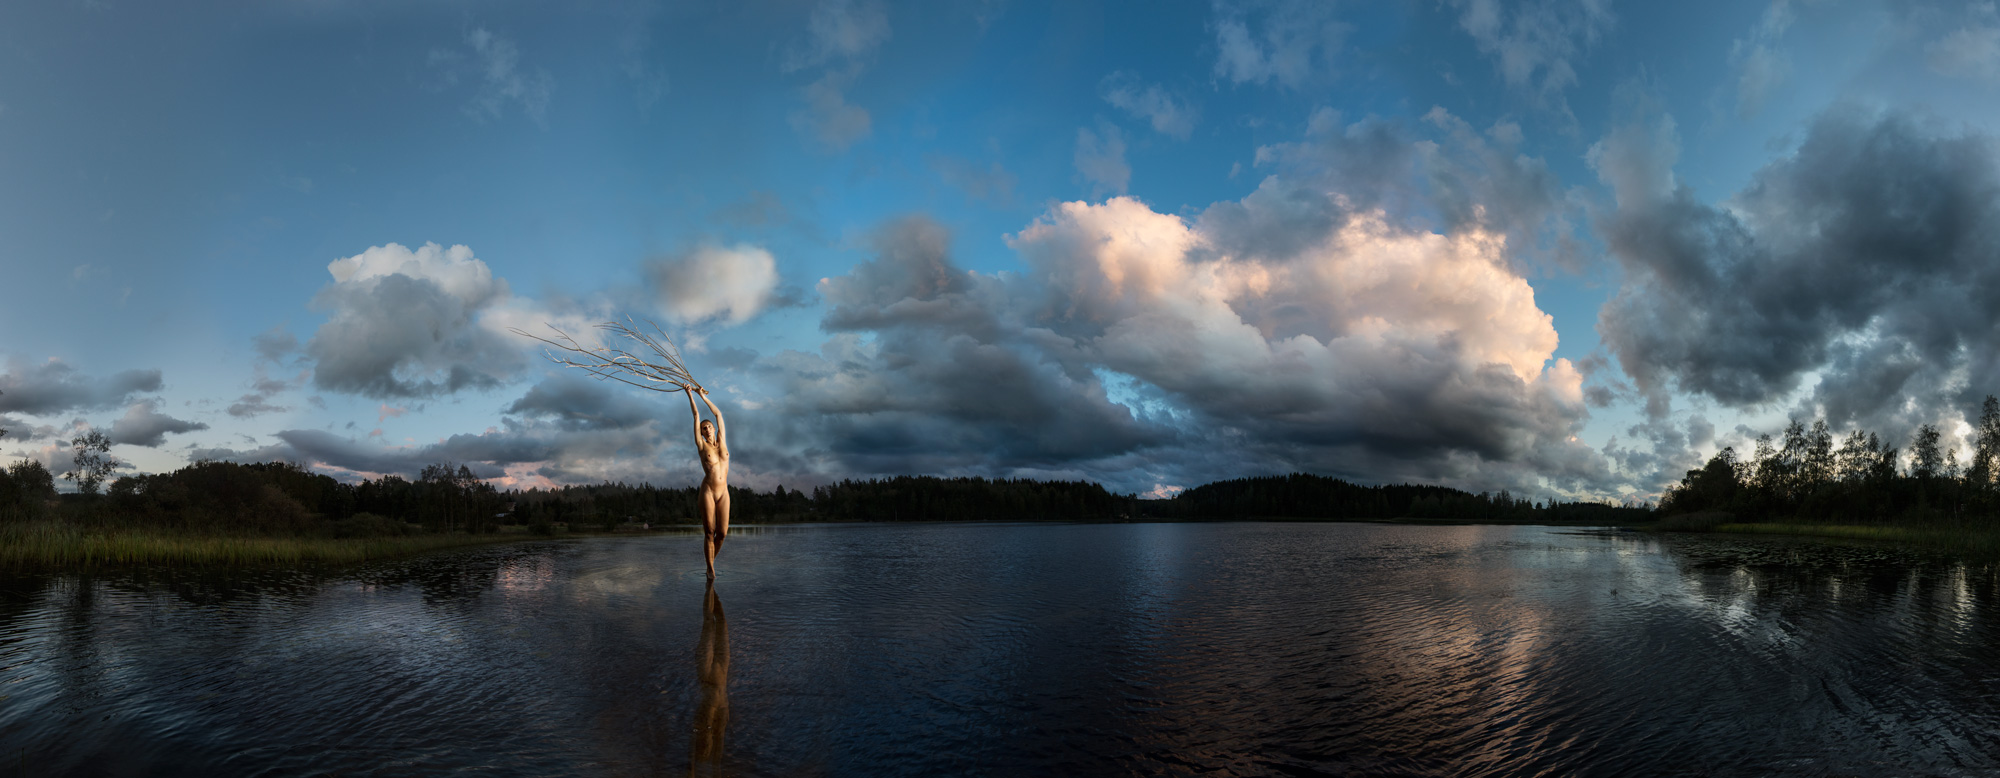 KÄÄNNA JUURI V. Fotografía y retoque digital. Lago Iso Hustu, Hämeenkyrö, Finlandia